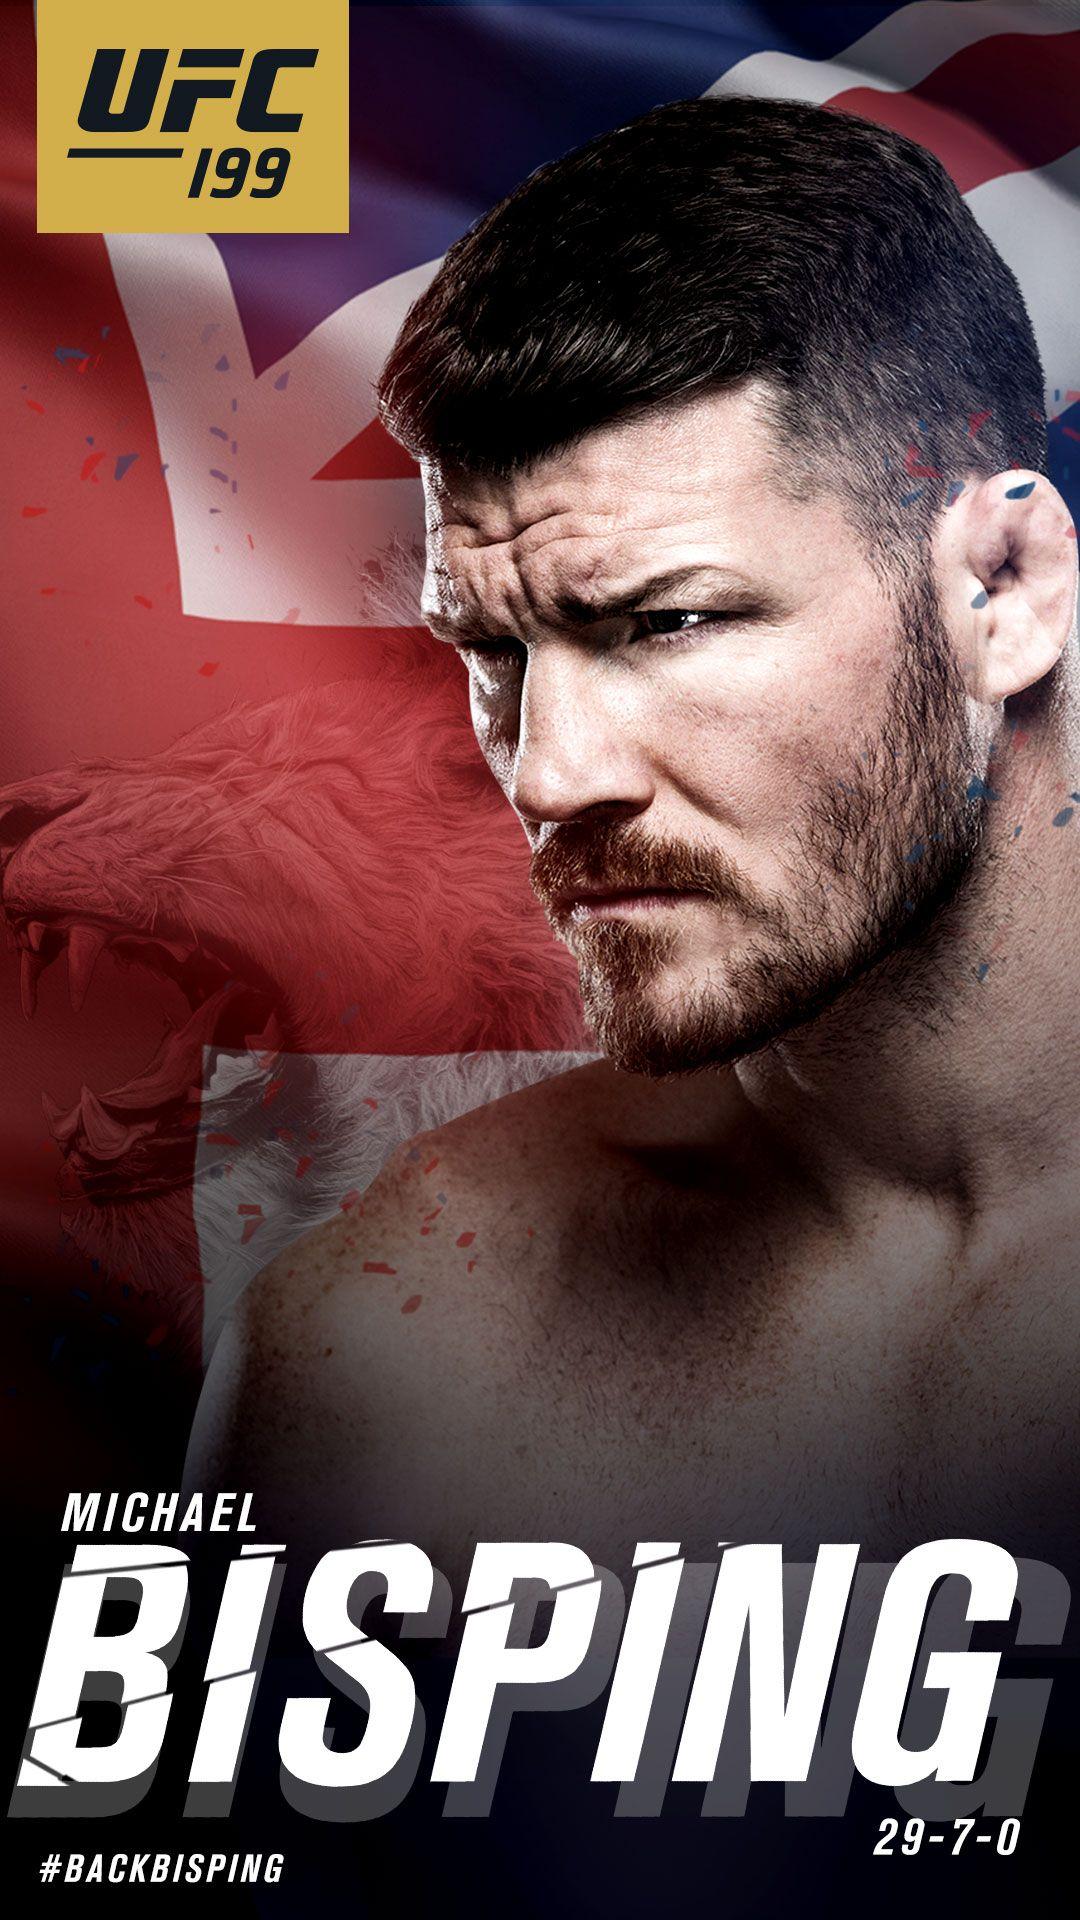 UFC 199 Wallpaper Downloads. UFC ®